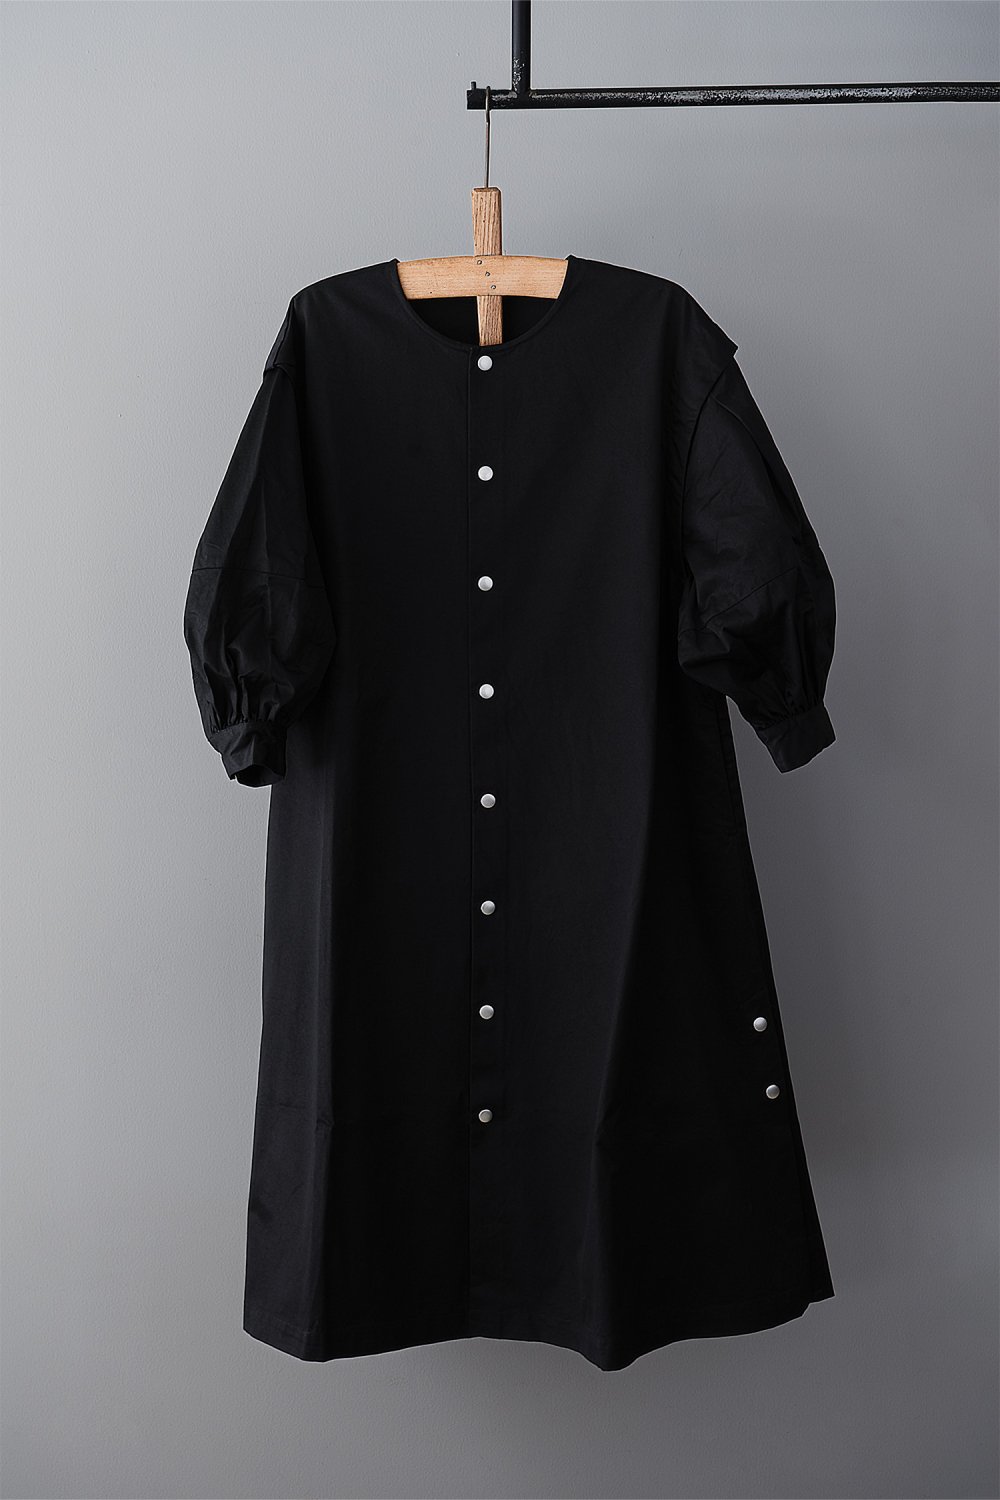 UNIVERSAL TISSU Twill Dress（ Black ）